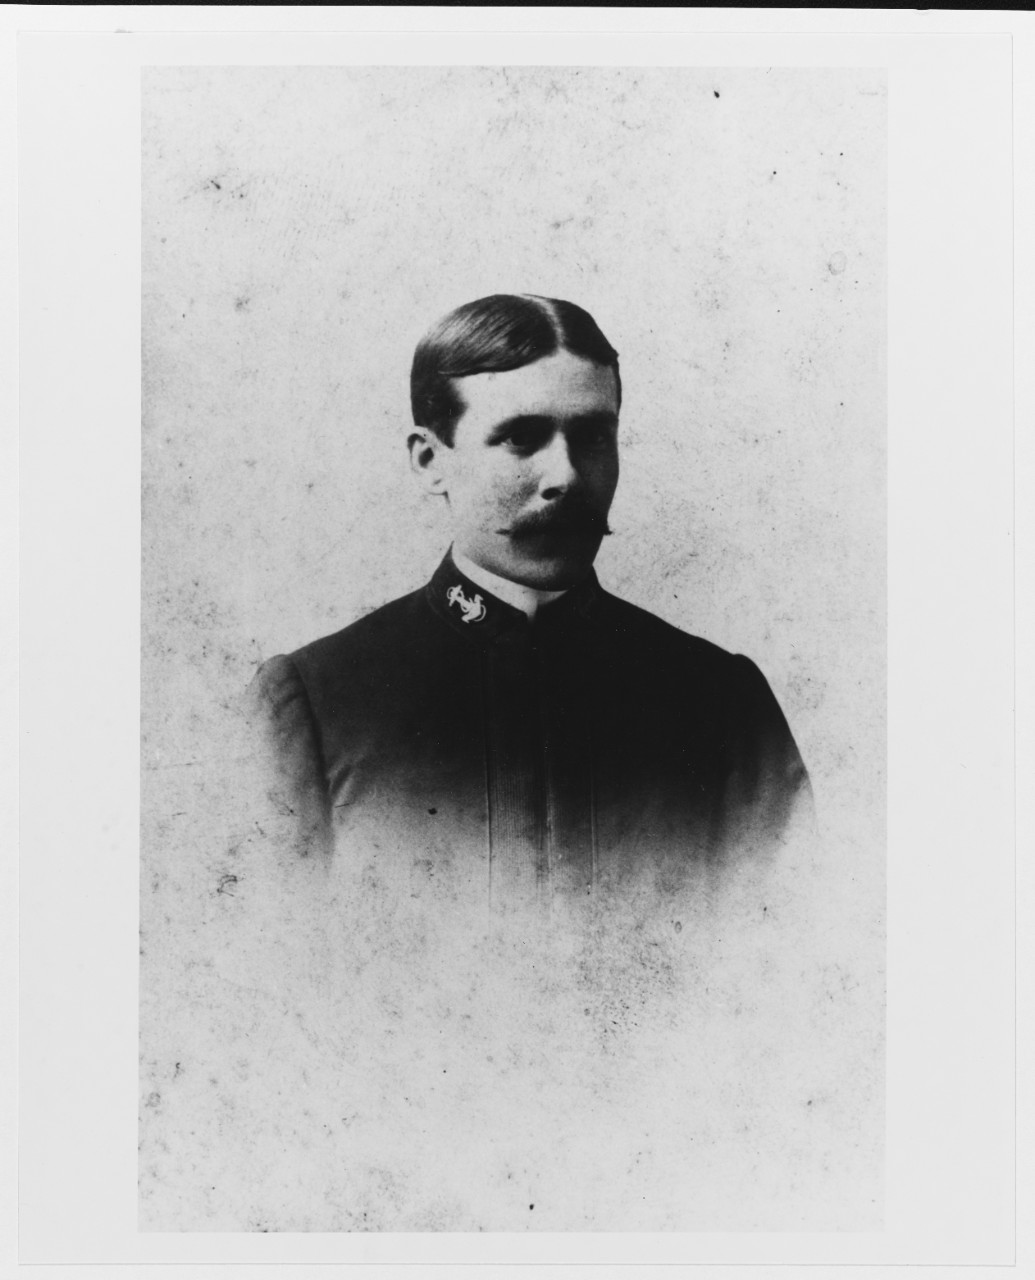 Lieutenant William V. Pratt, USN